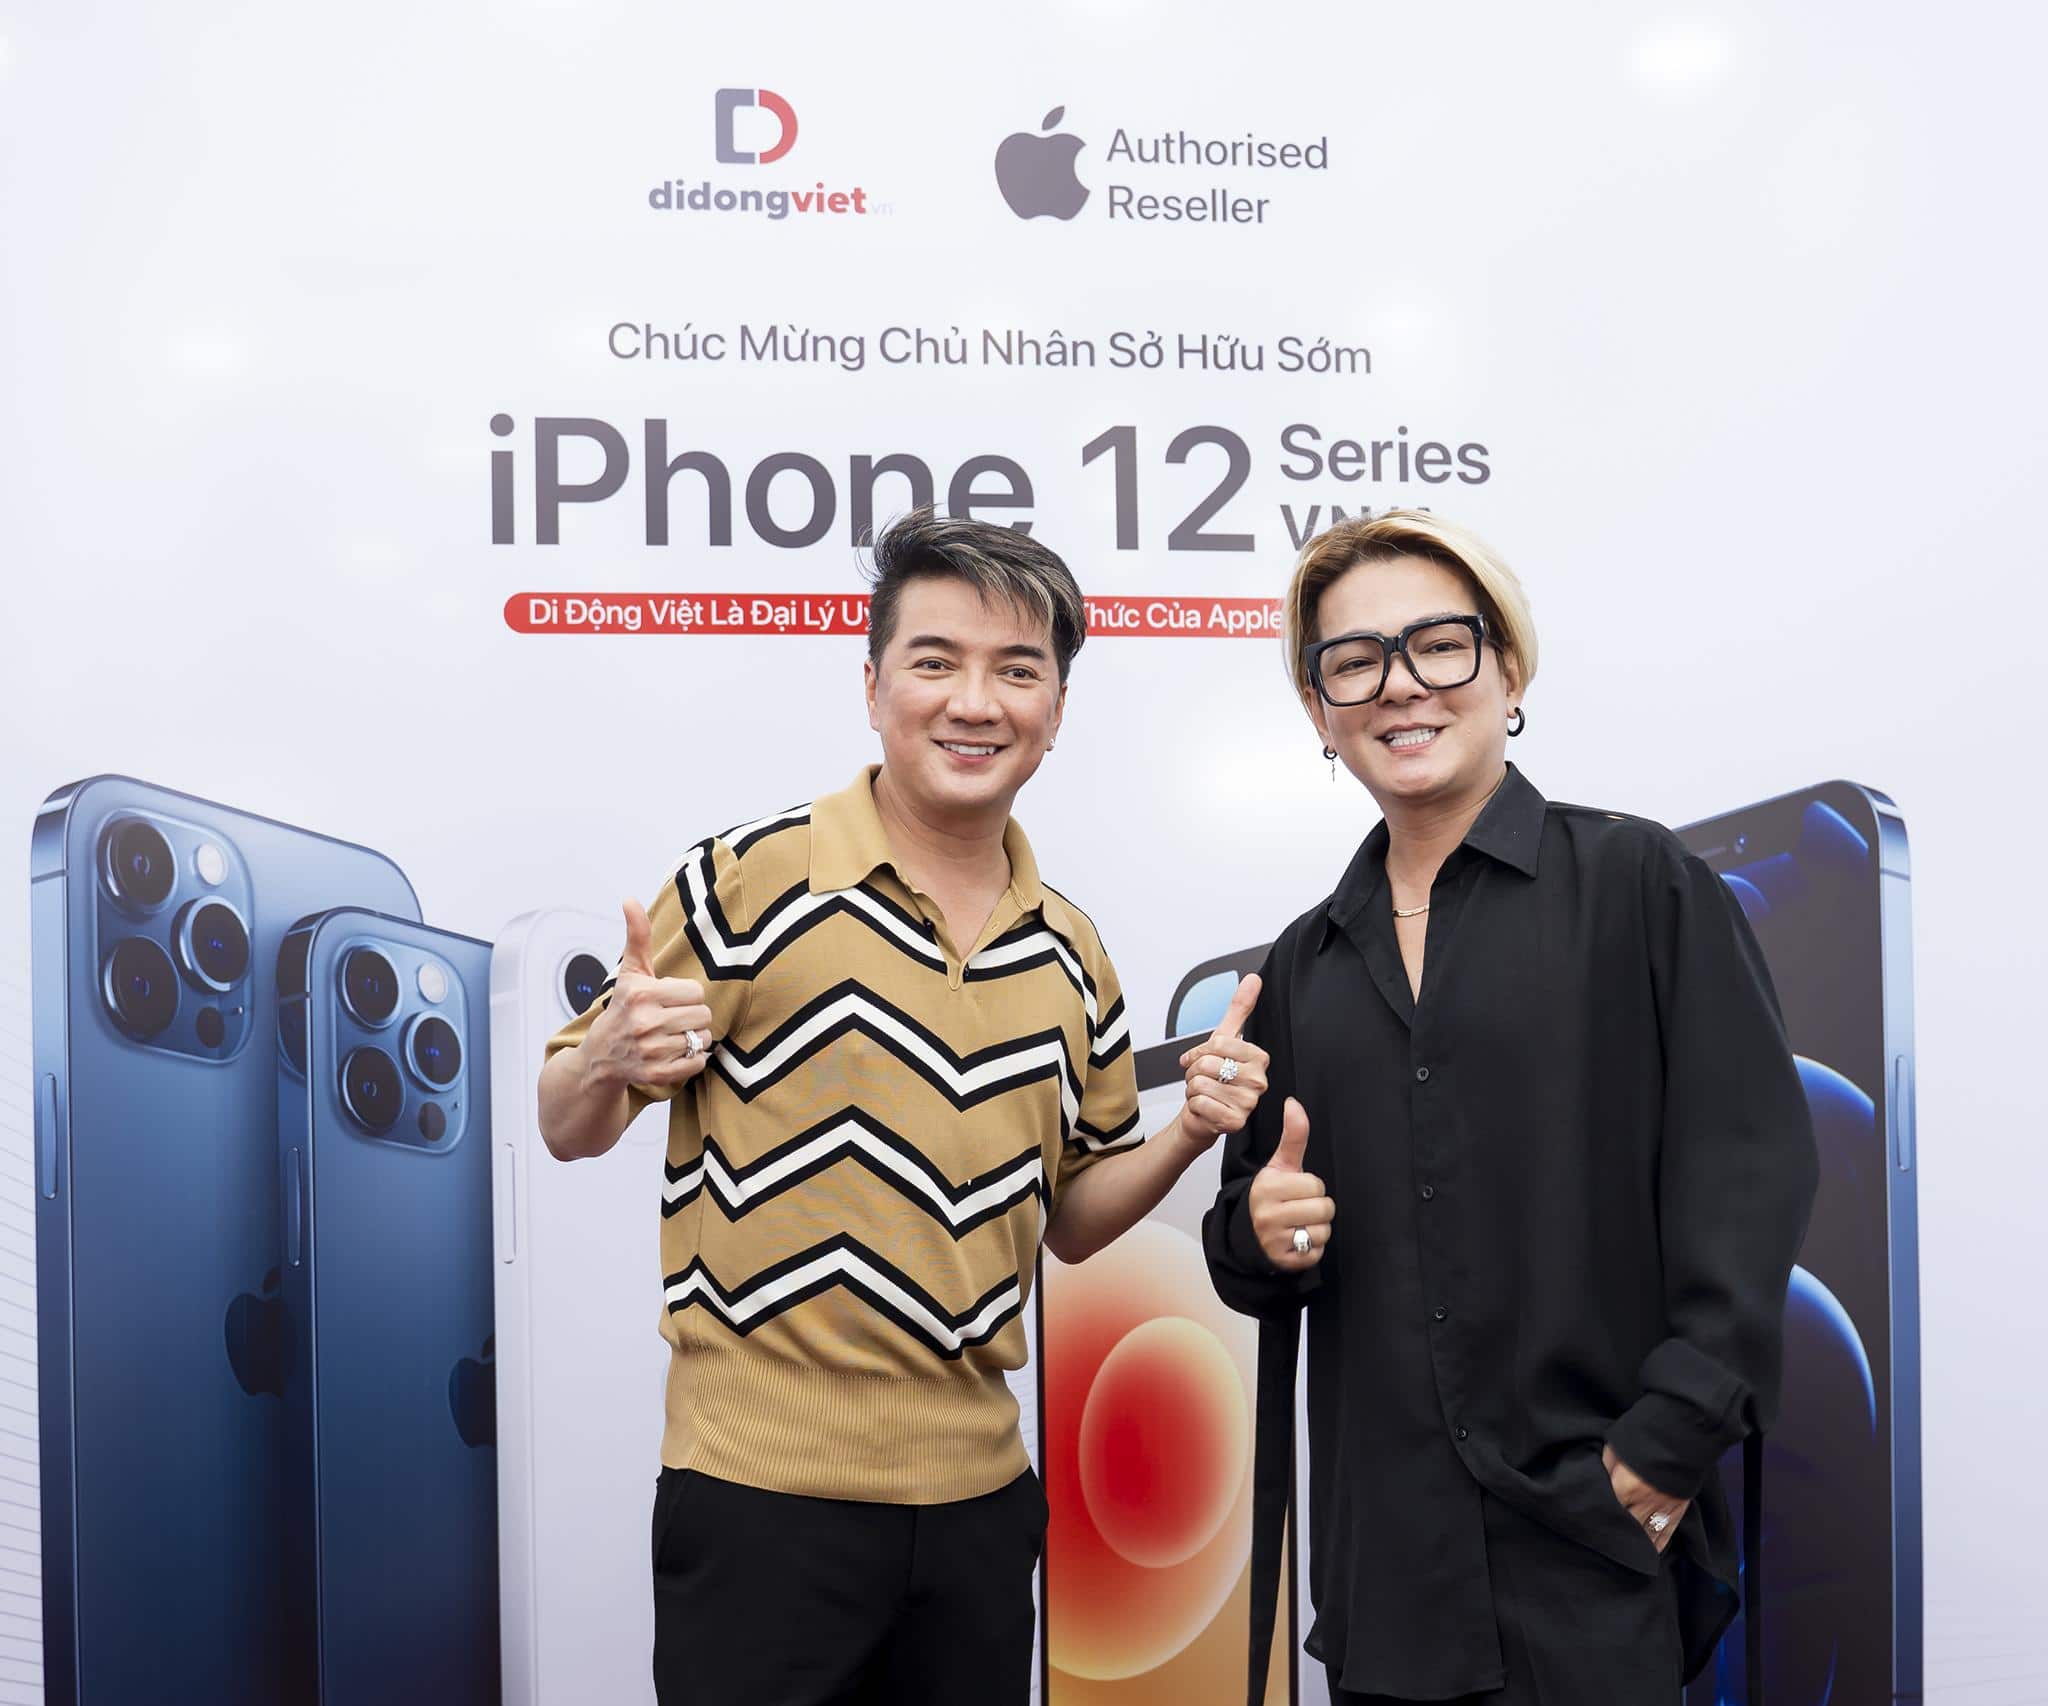 Đàm Vĩnh Hưng - Vũ Hà "rủ nhau" đi sắm iPhone 12 Pro Max